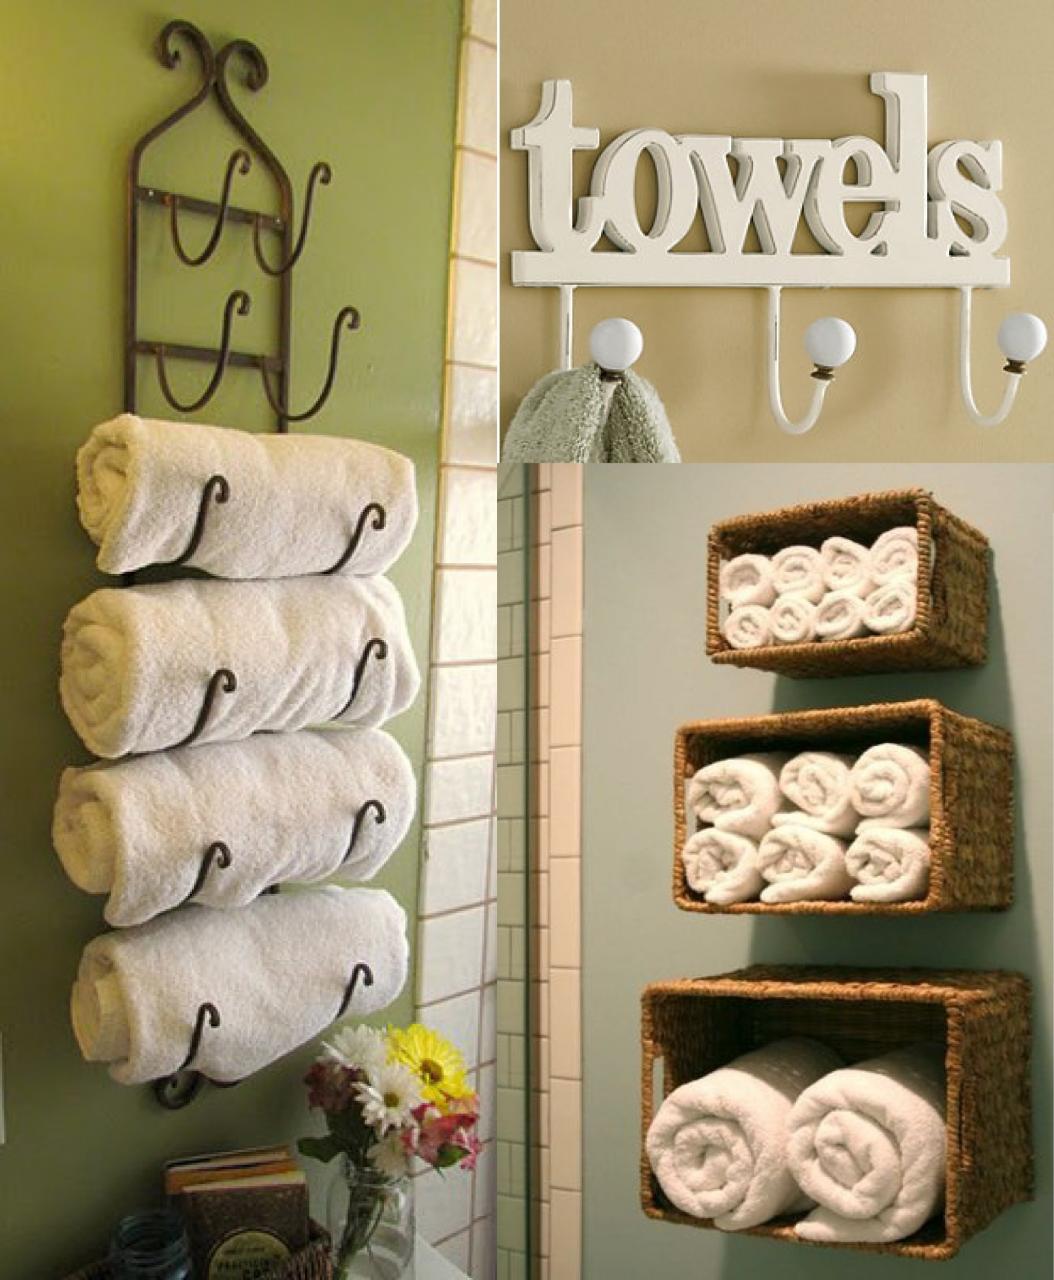 Best Of Bathroom towel Ideas Model Home Sweet Home Modern Livingroom